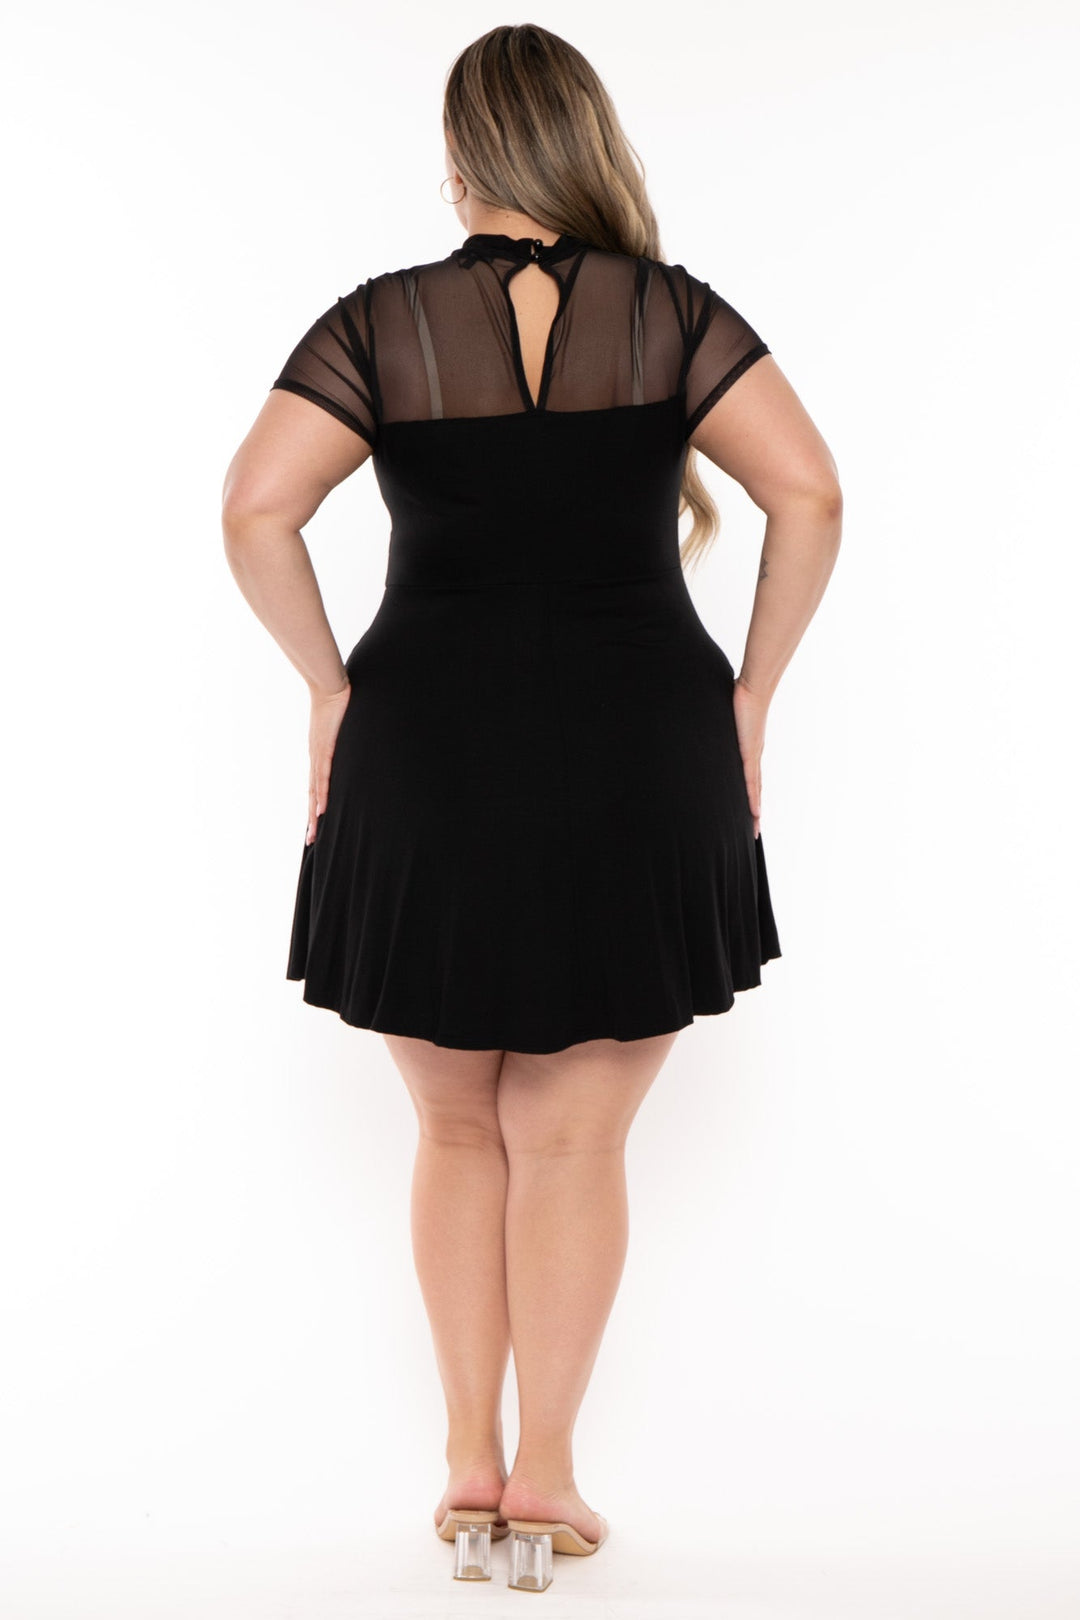 Curvy Sense Dresses Plus Size Marietta Front Twist  Dress- Black